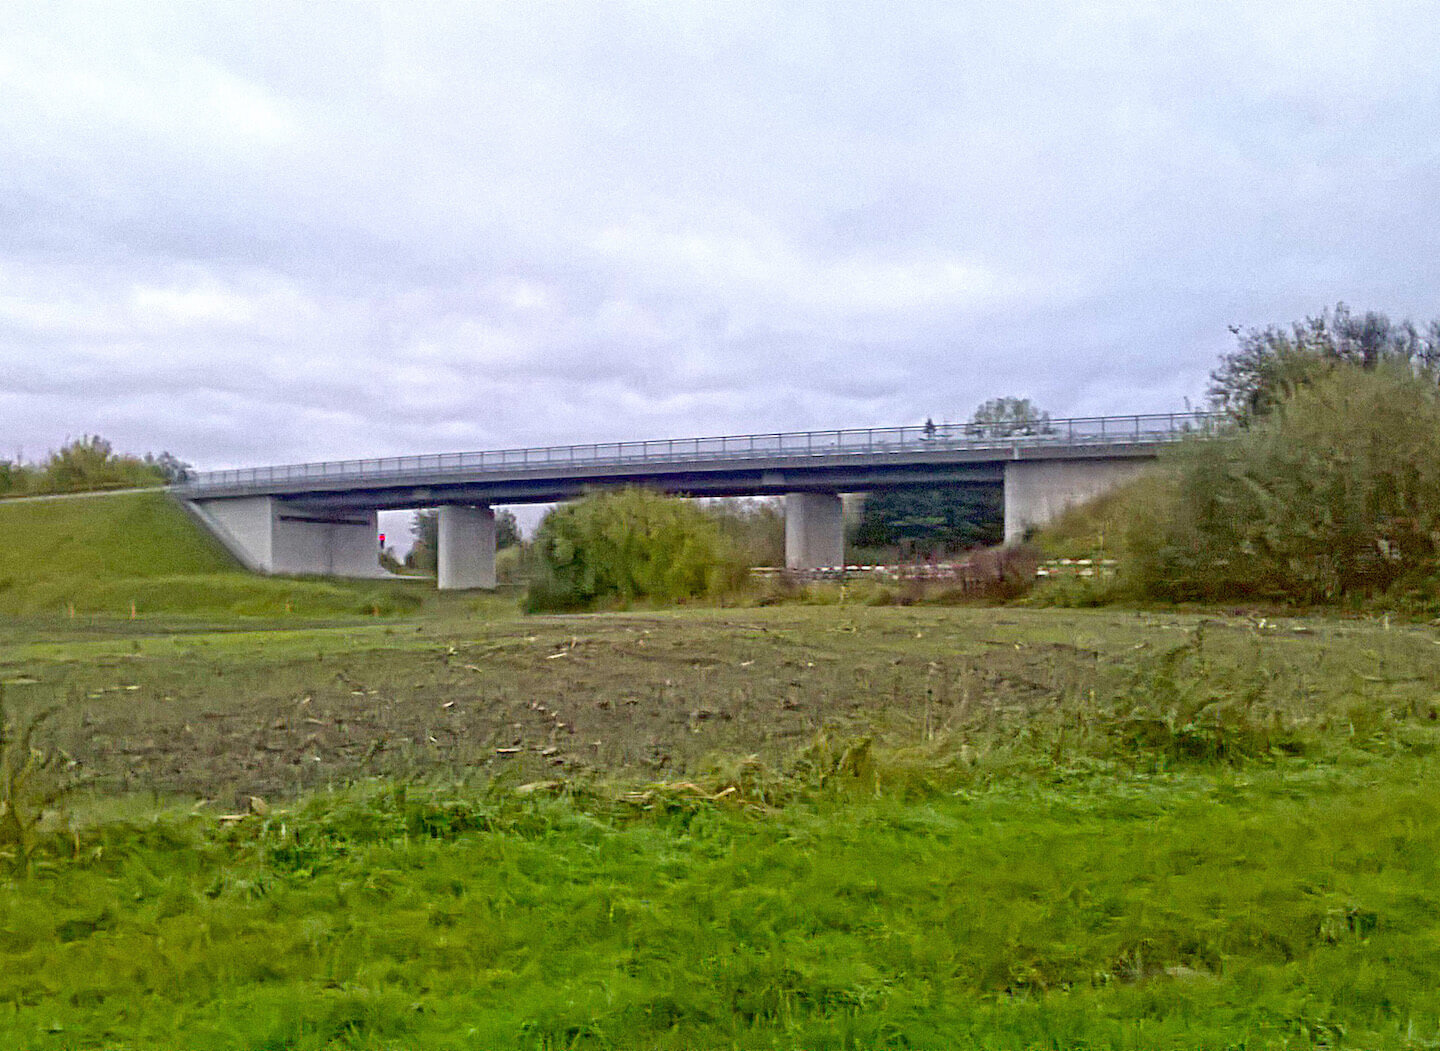 Brücke im Zuge der K59, Beschendorf, Schleswig-Holstein